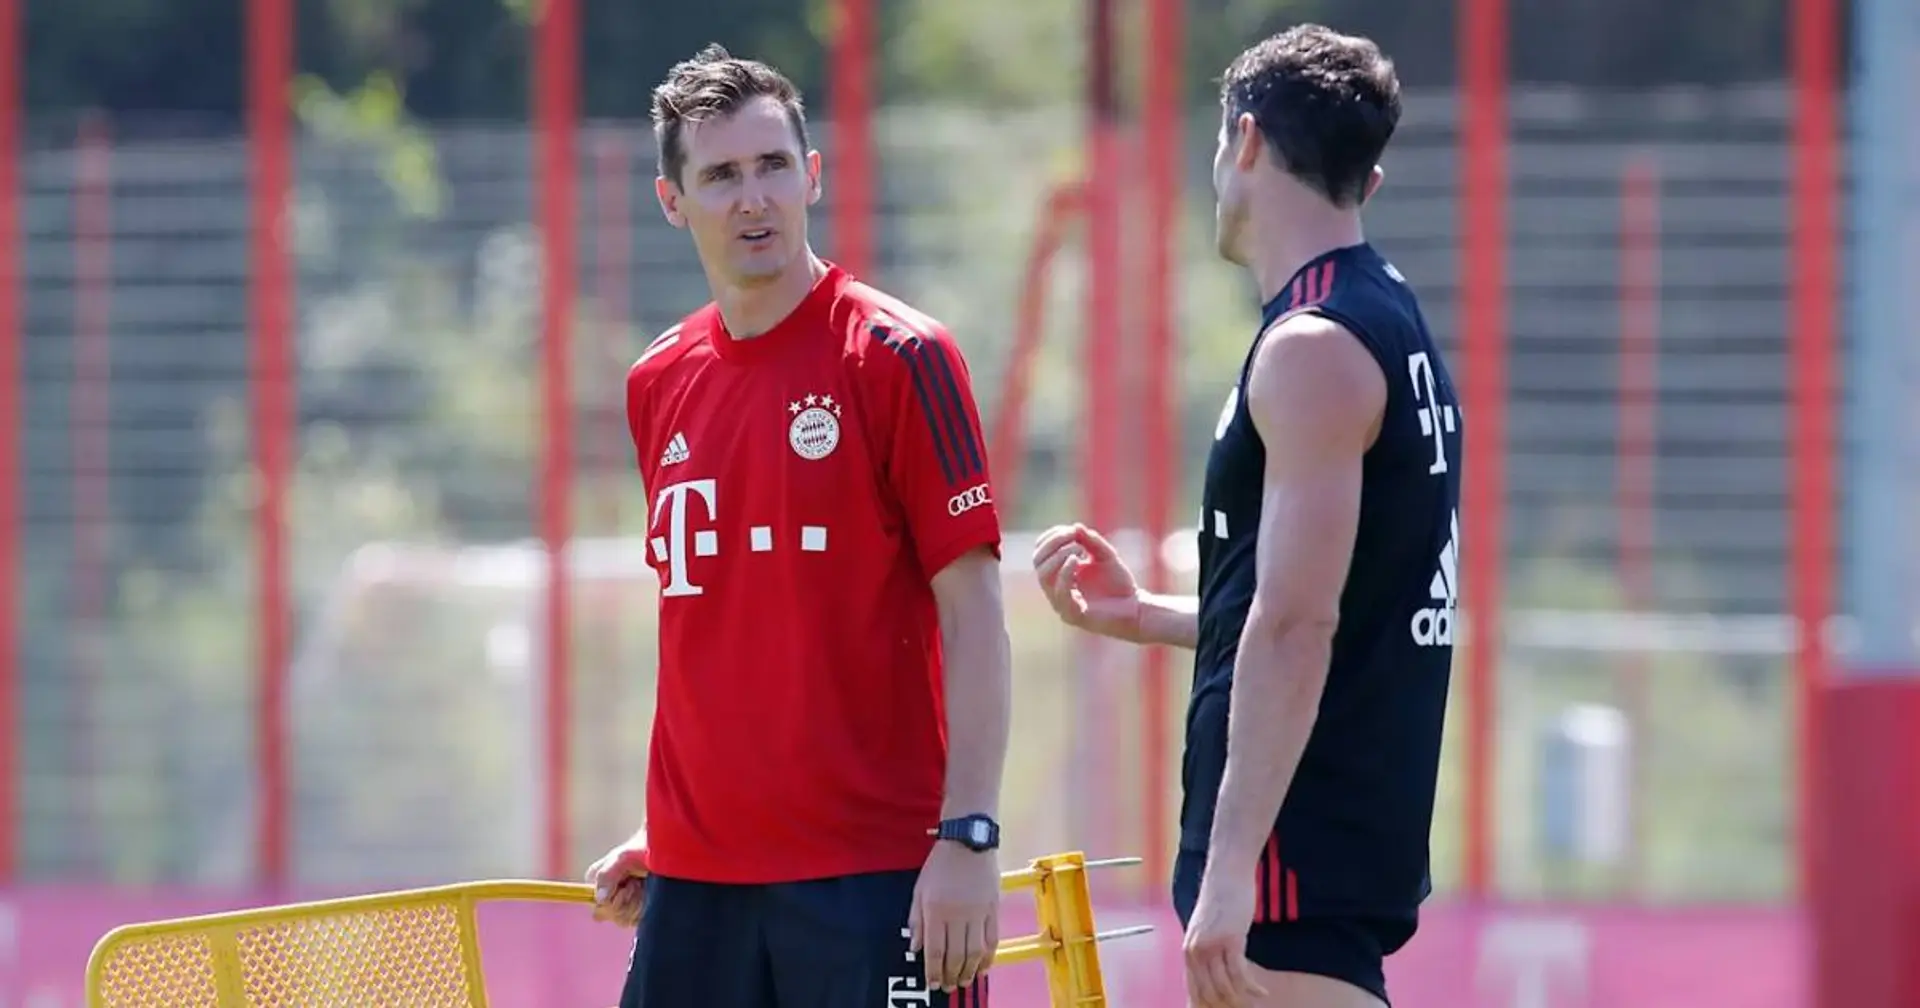 "Bin sehr glücklich, dabei zu sein": Klose spricht über seine neue Rolle bei Bayern